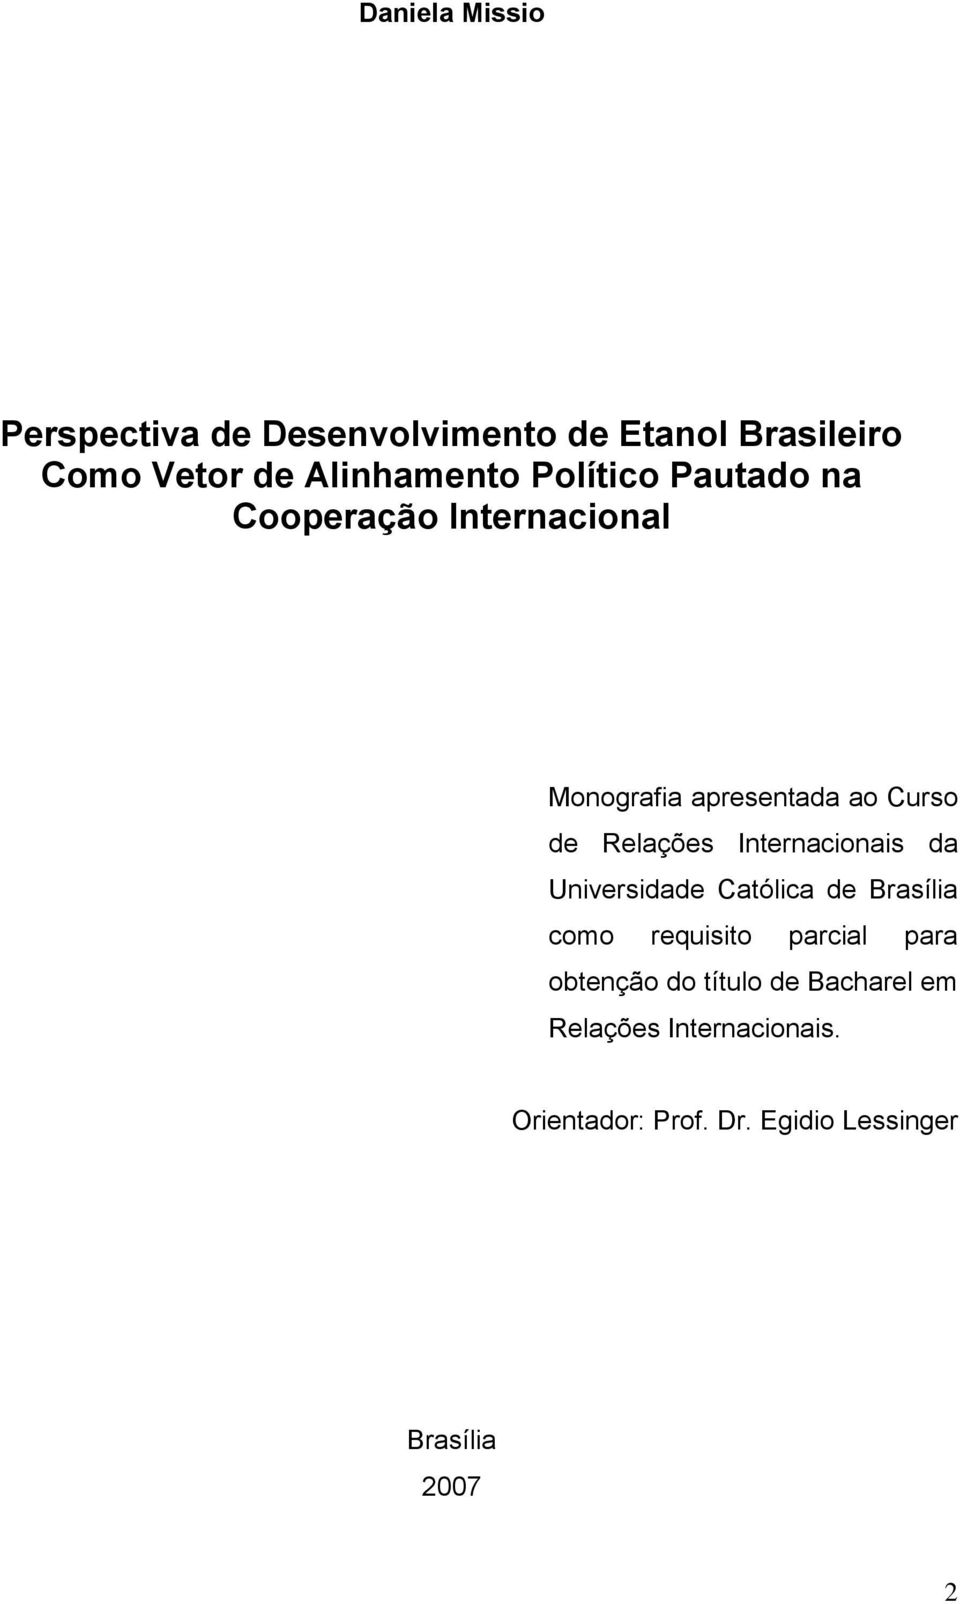 Internacionais da Universidade Católica de Brasília como requisito parcial para obtenção do